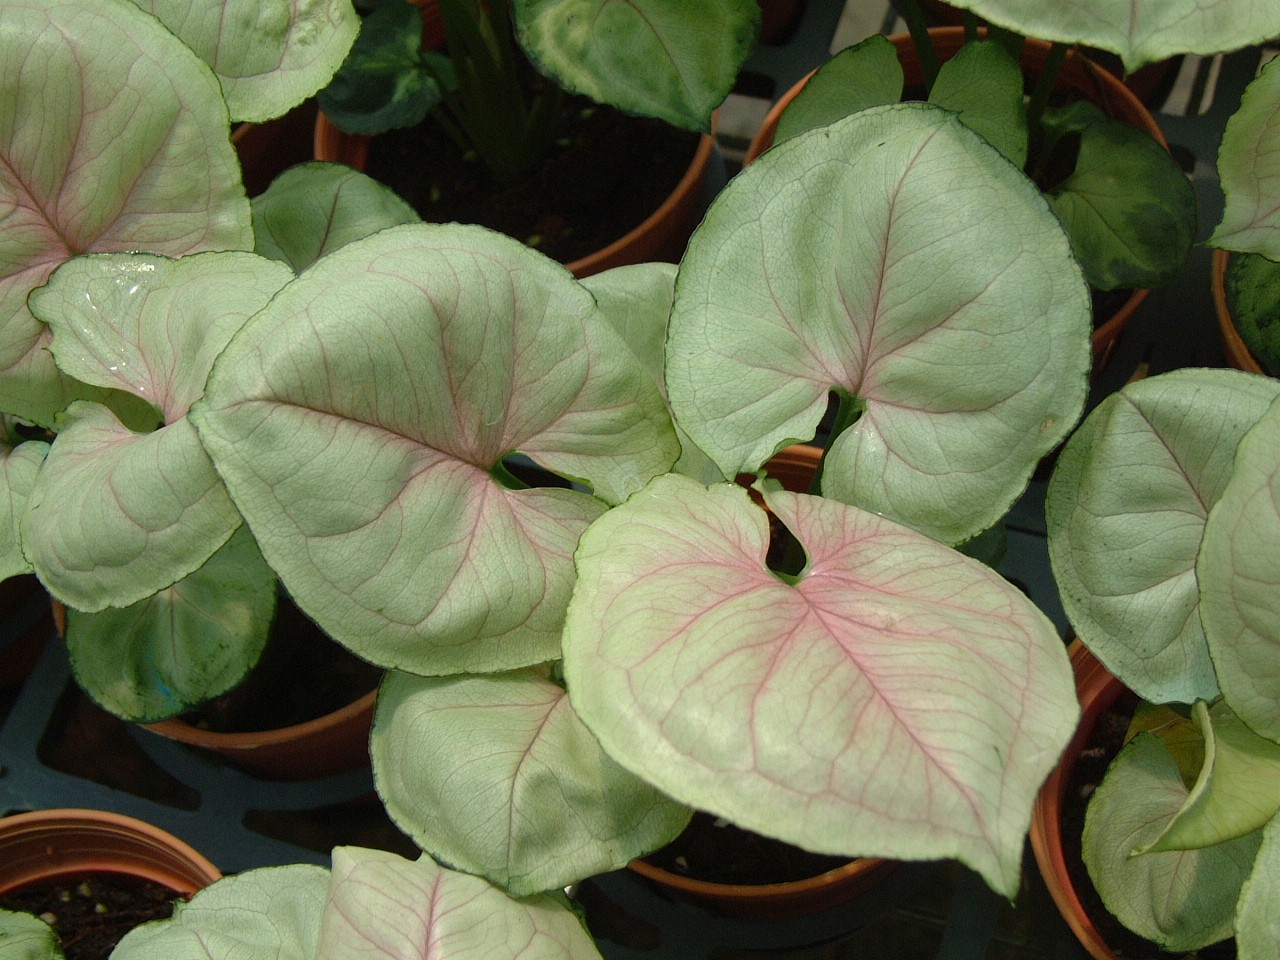 Arrowhead plant